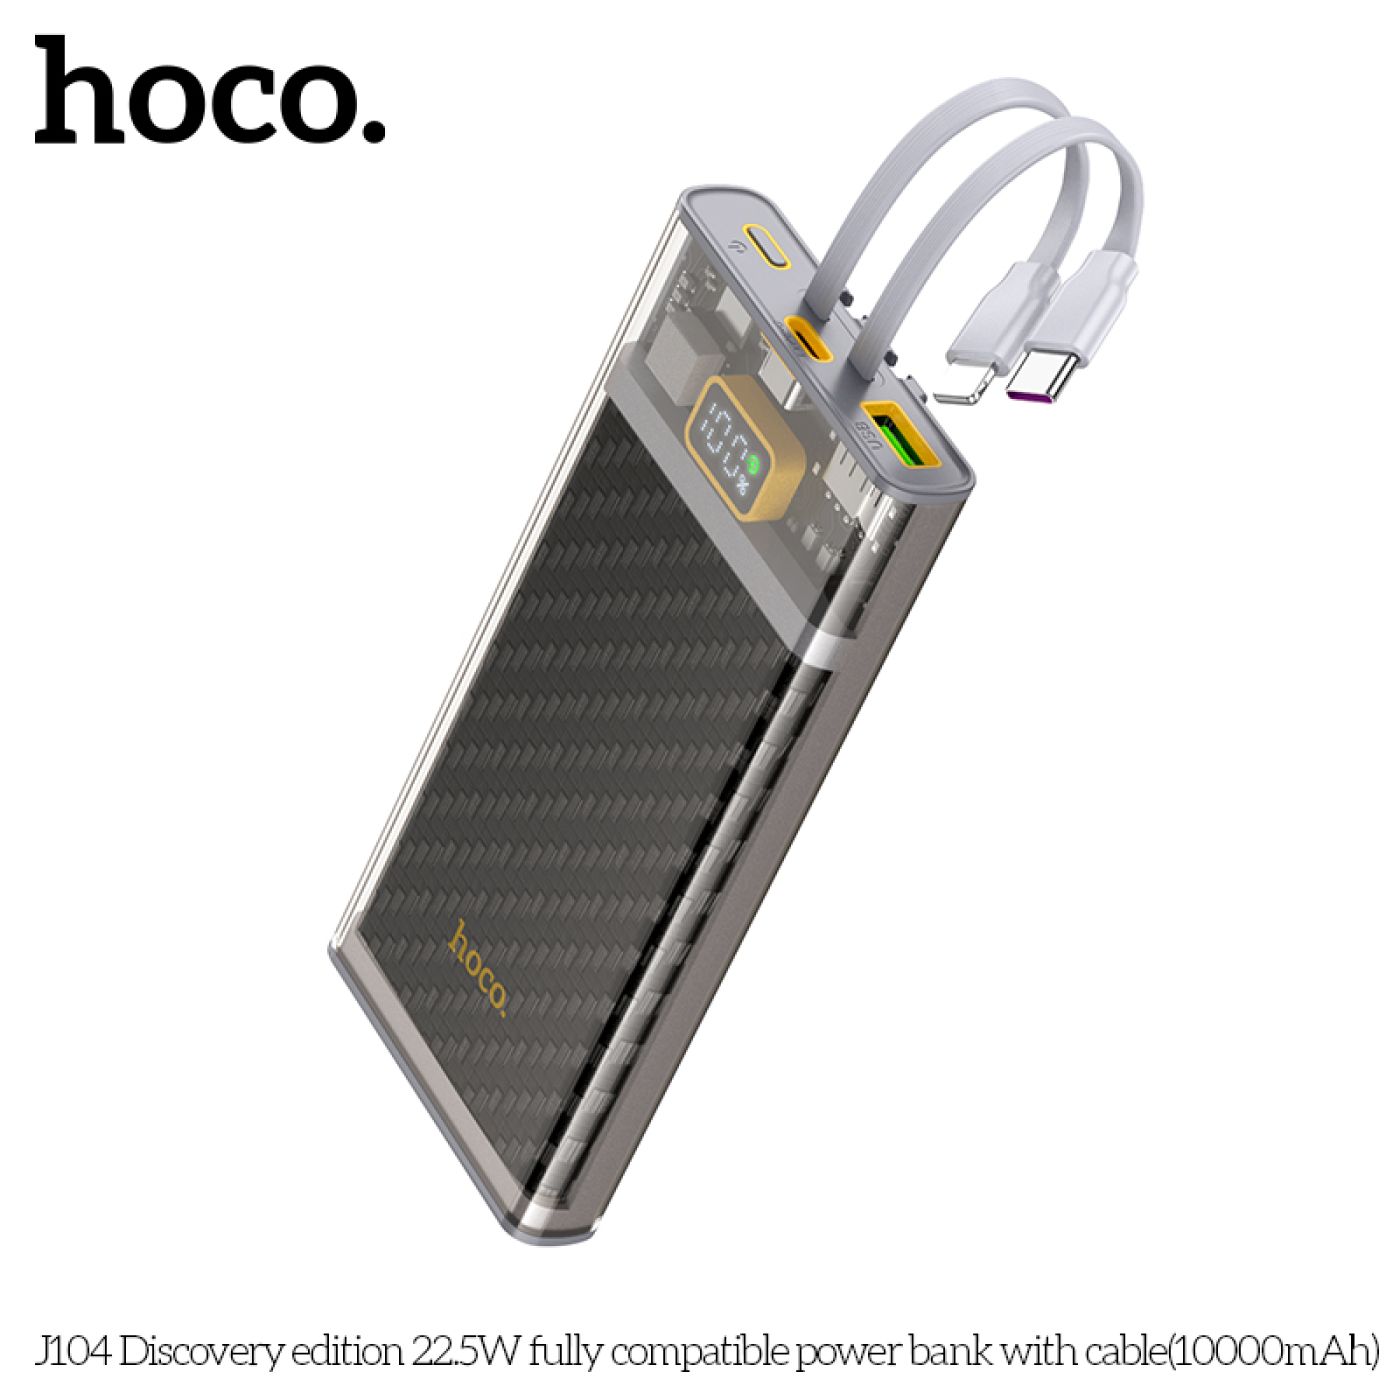 ￼Pin sạc dự phòng Hoco J104A, tích hợp dây sạc, dung lượng 20000mAh, hỗ trợ sạc nhanh 22.5W / PD QC3